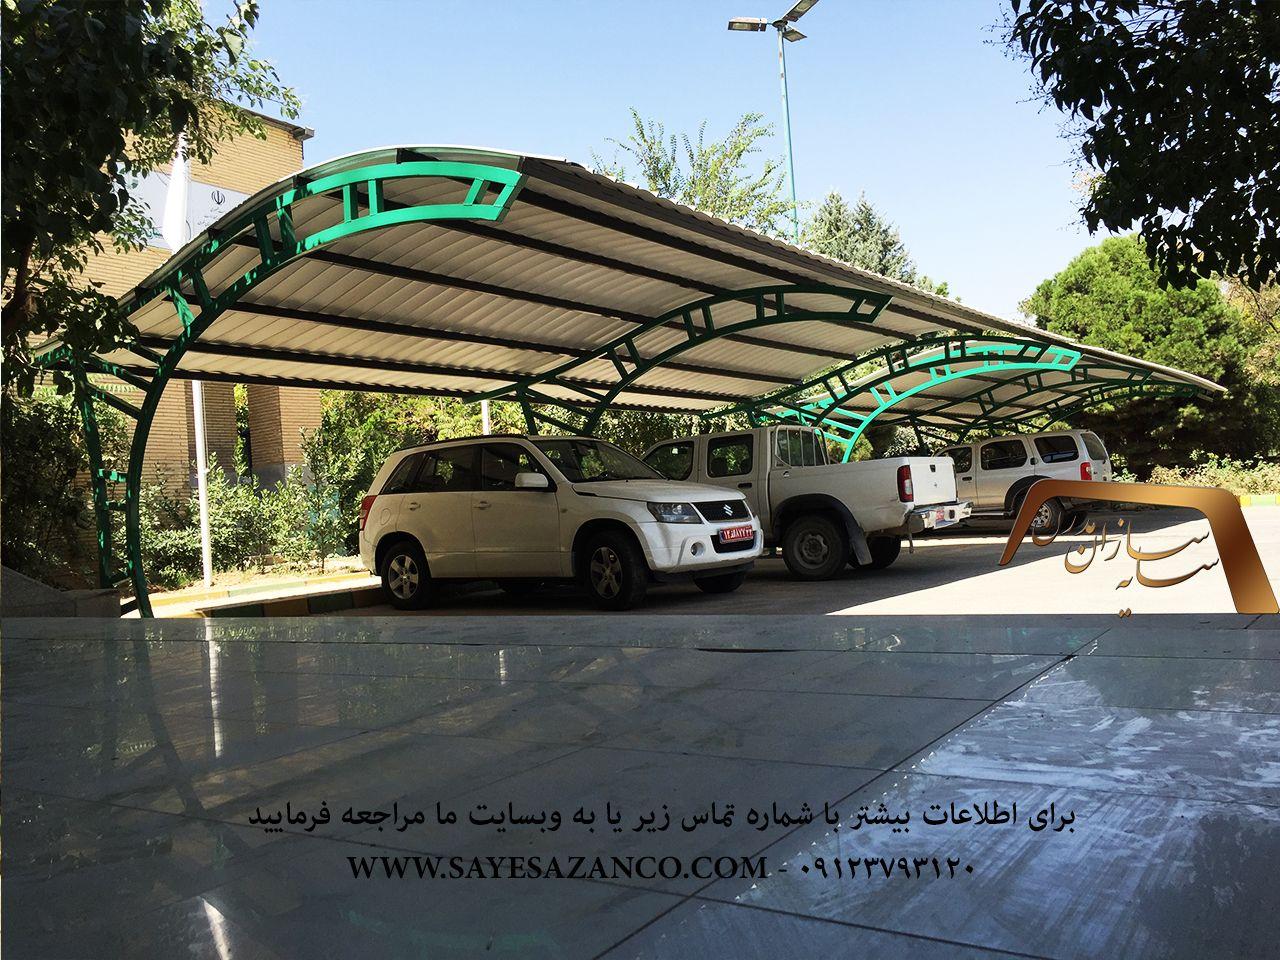 ساخت سایبان پارکینگ خودرو،سایبان پیش ساخته،سایبان خودرو اداری،سایبان ارزان قیمت در تهران و سایر شهرستان ها